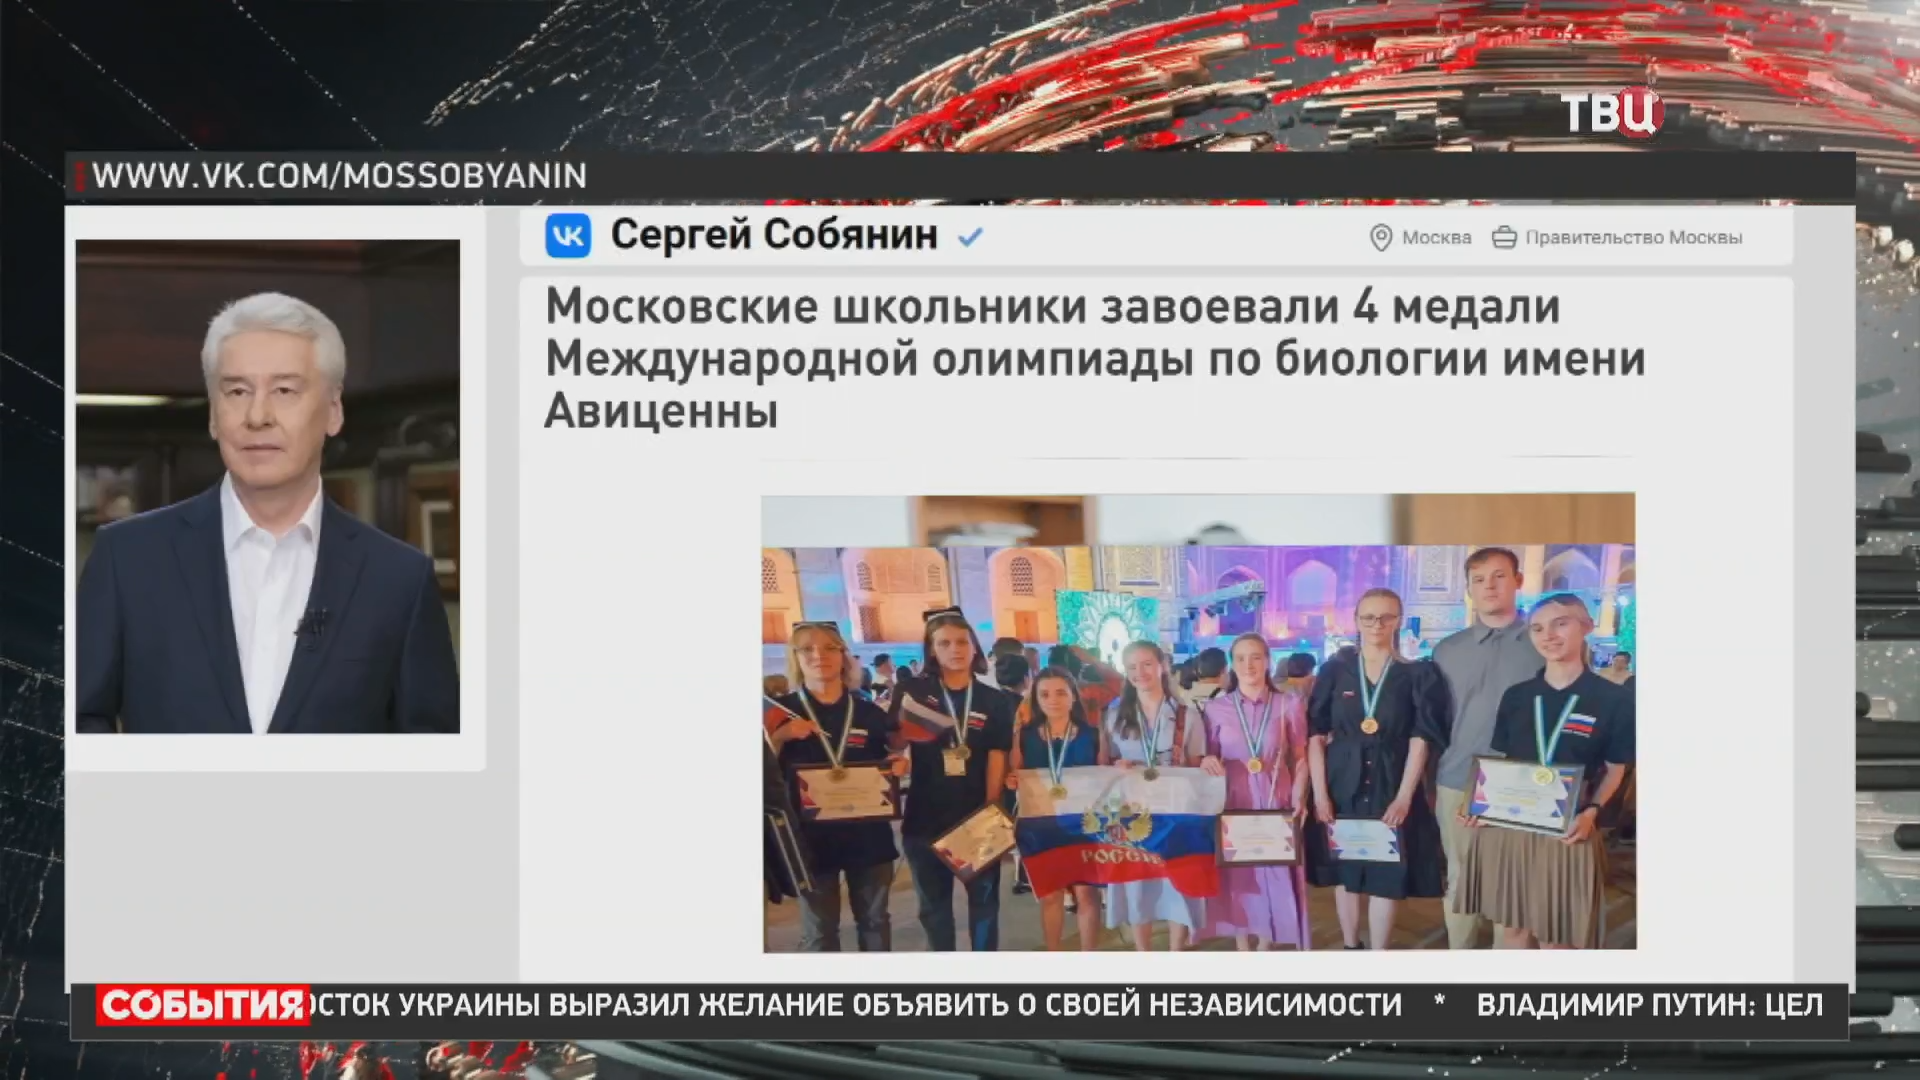 Собянин поздравил московских школьников с победой на олимпиаде по биологии / События на ТВЦ